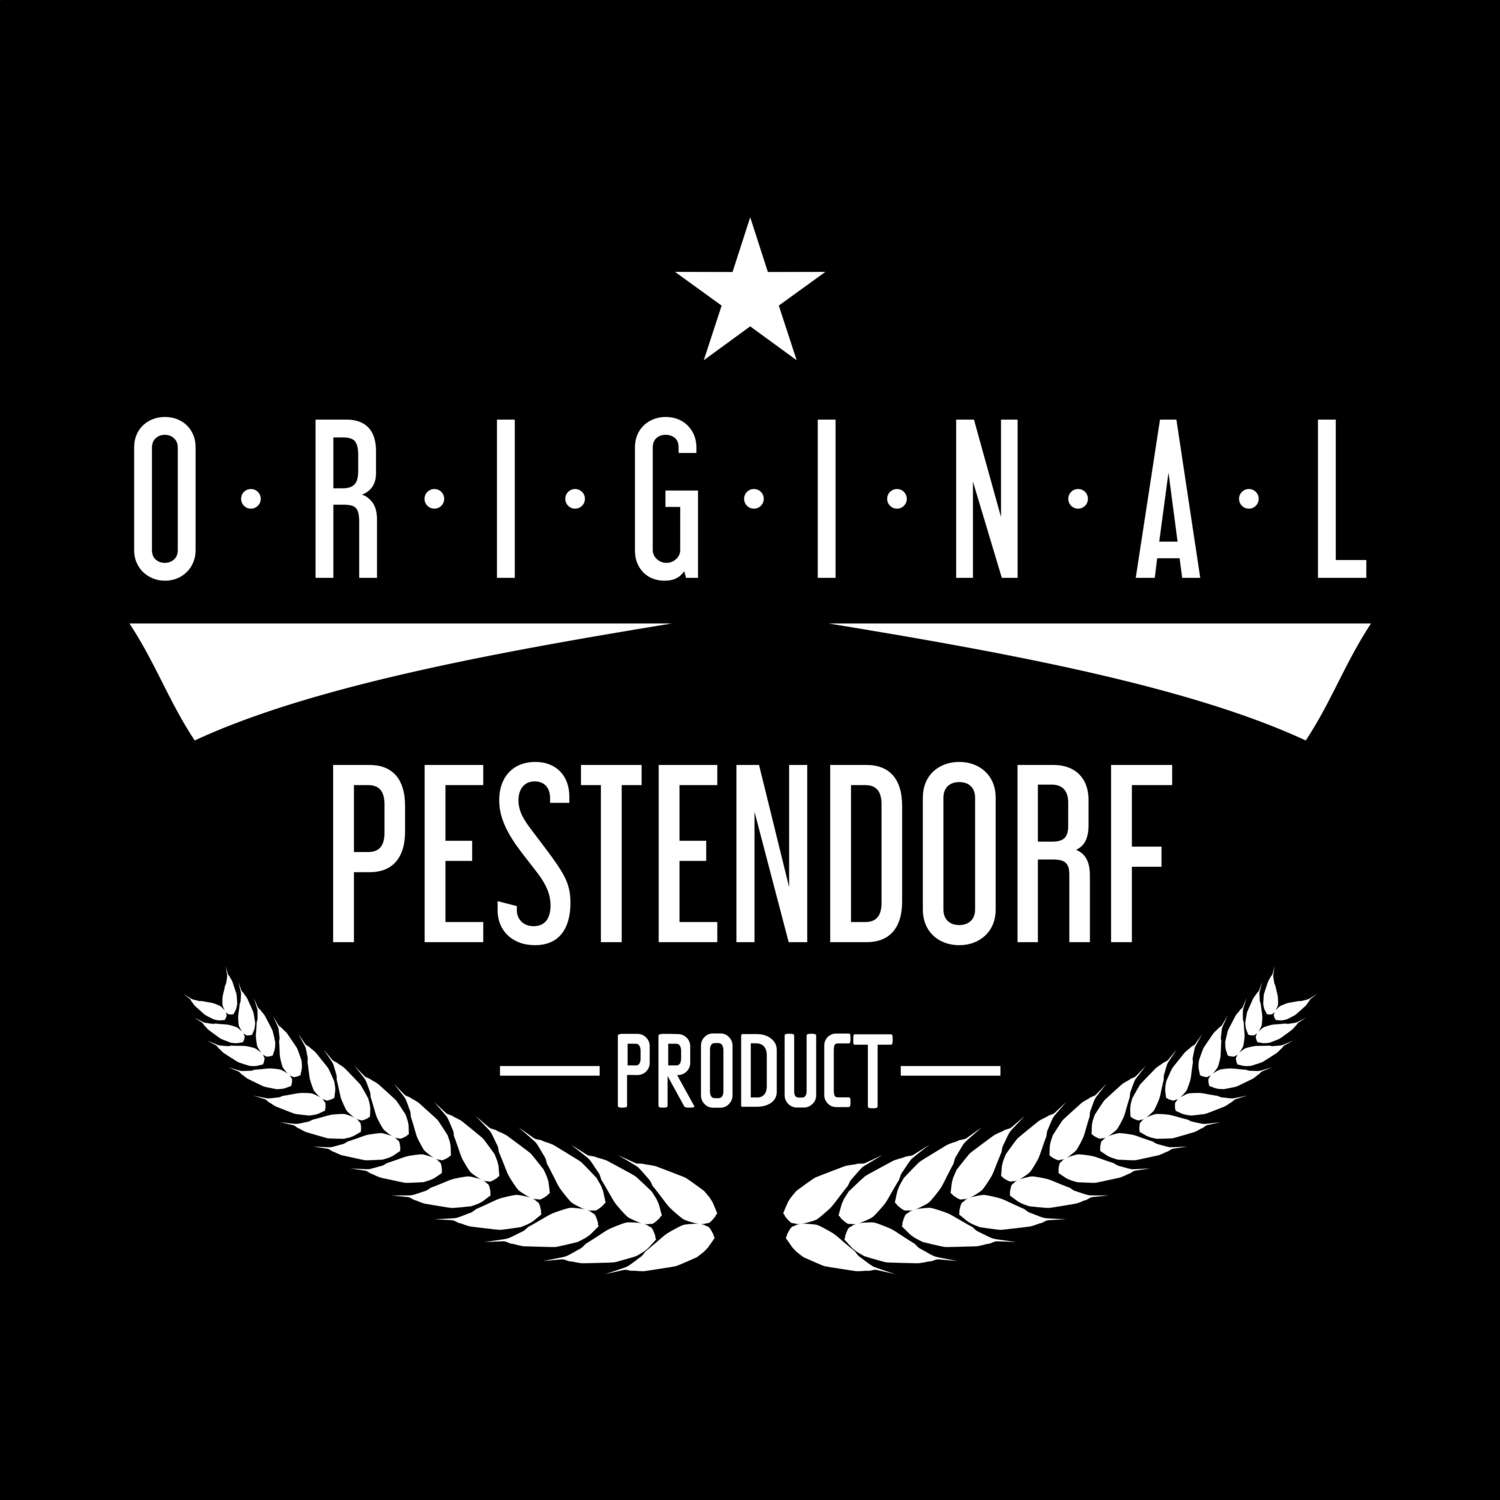 Pestendorf T-Shirt »Original Product«